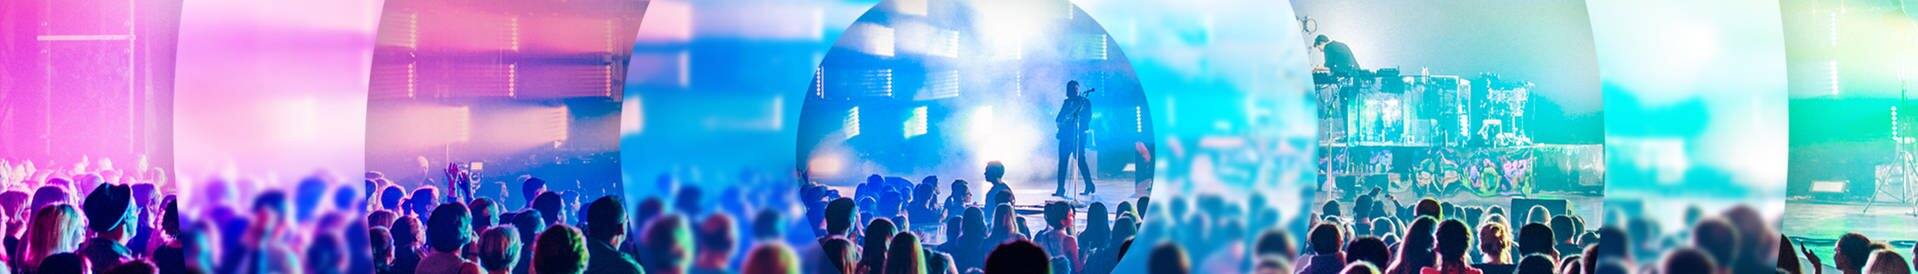 Publikum vor einer bunt beleuchteten Bühne mit Popmusikern (Foto: SWR3)